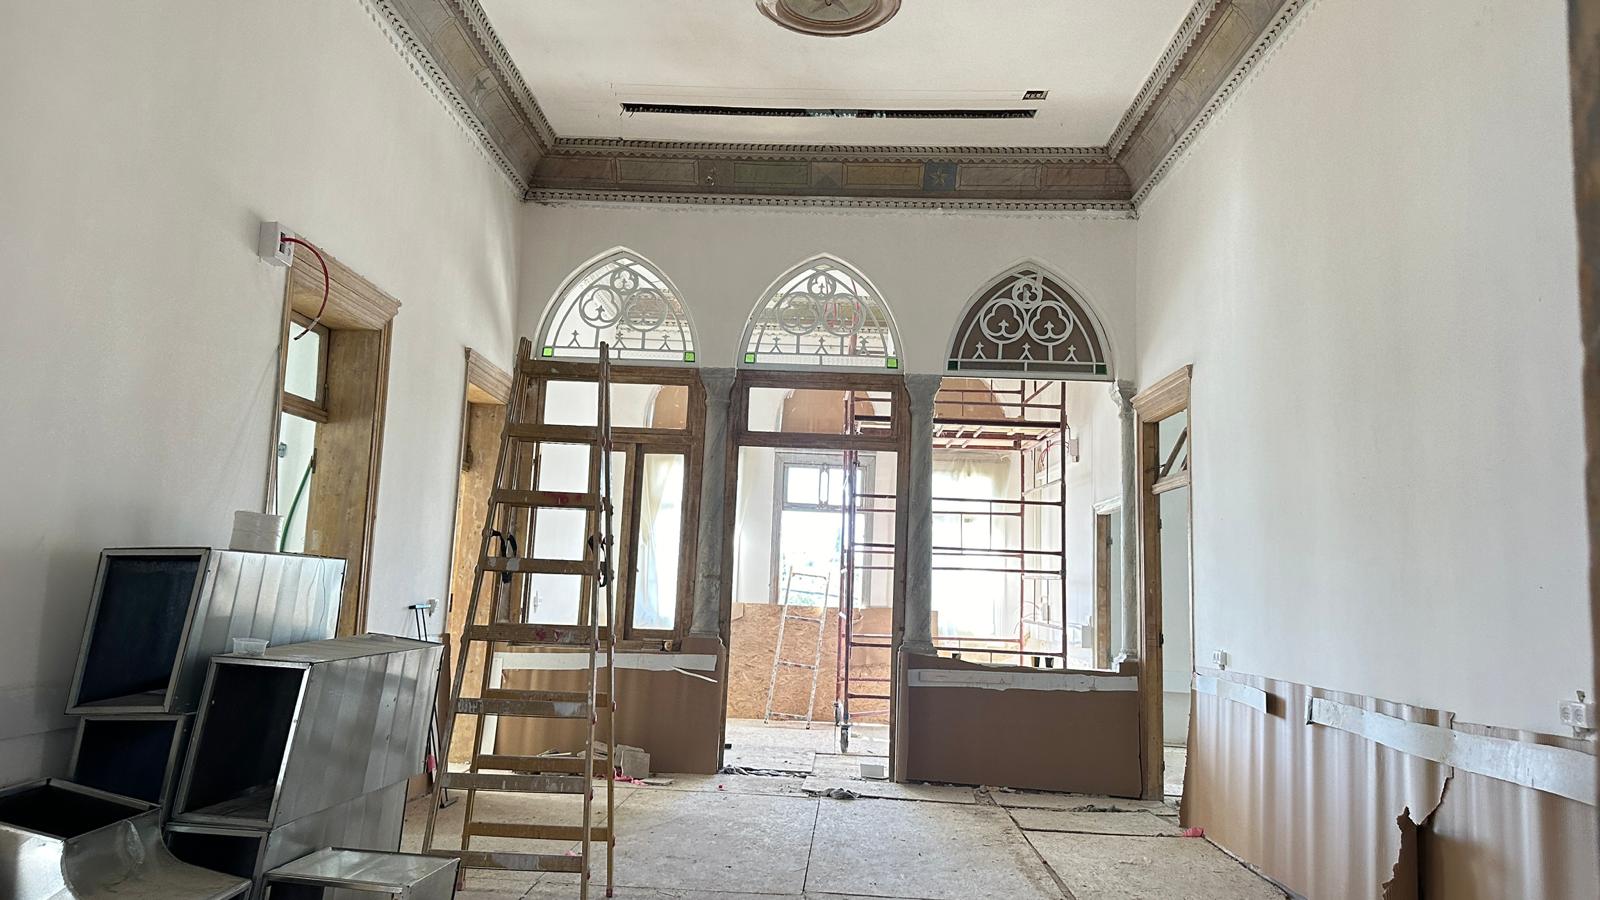 بيت حسن بركات التاريخي يحتفظ بأسمه تحت مظلة  مركز بركات الثقافي لتعزيز الهوية والثقافة في يافا